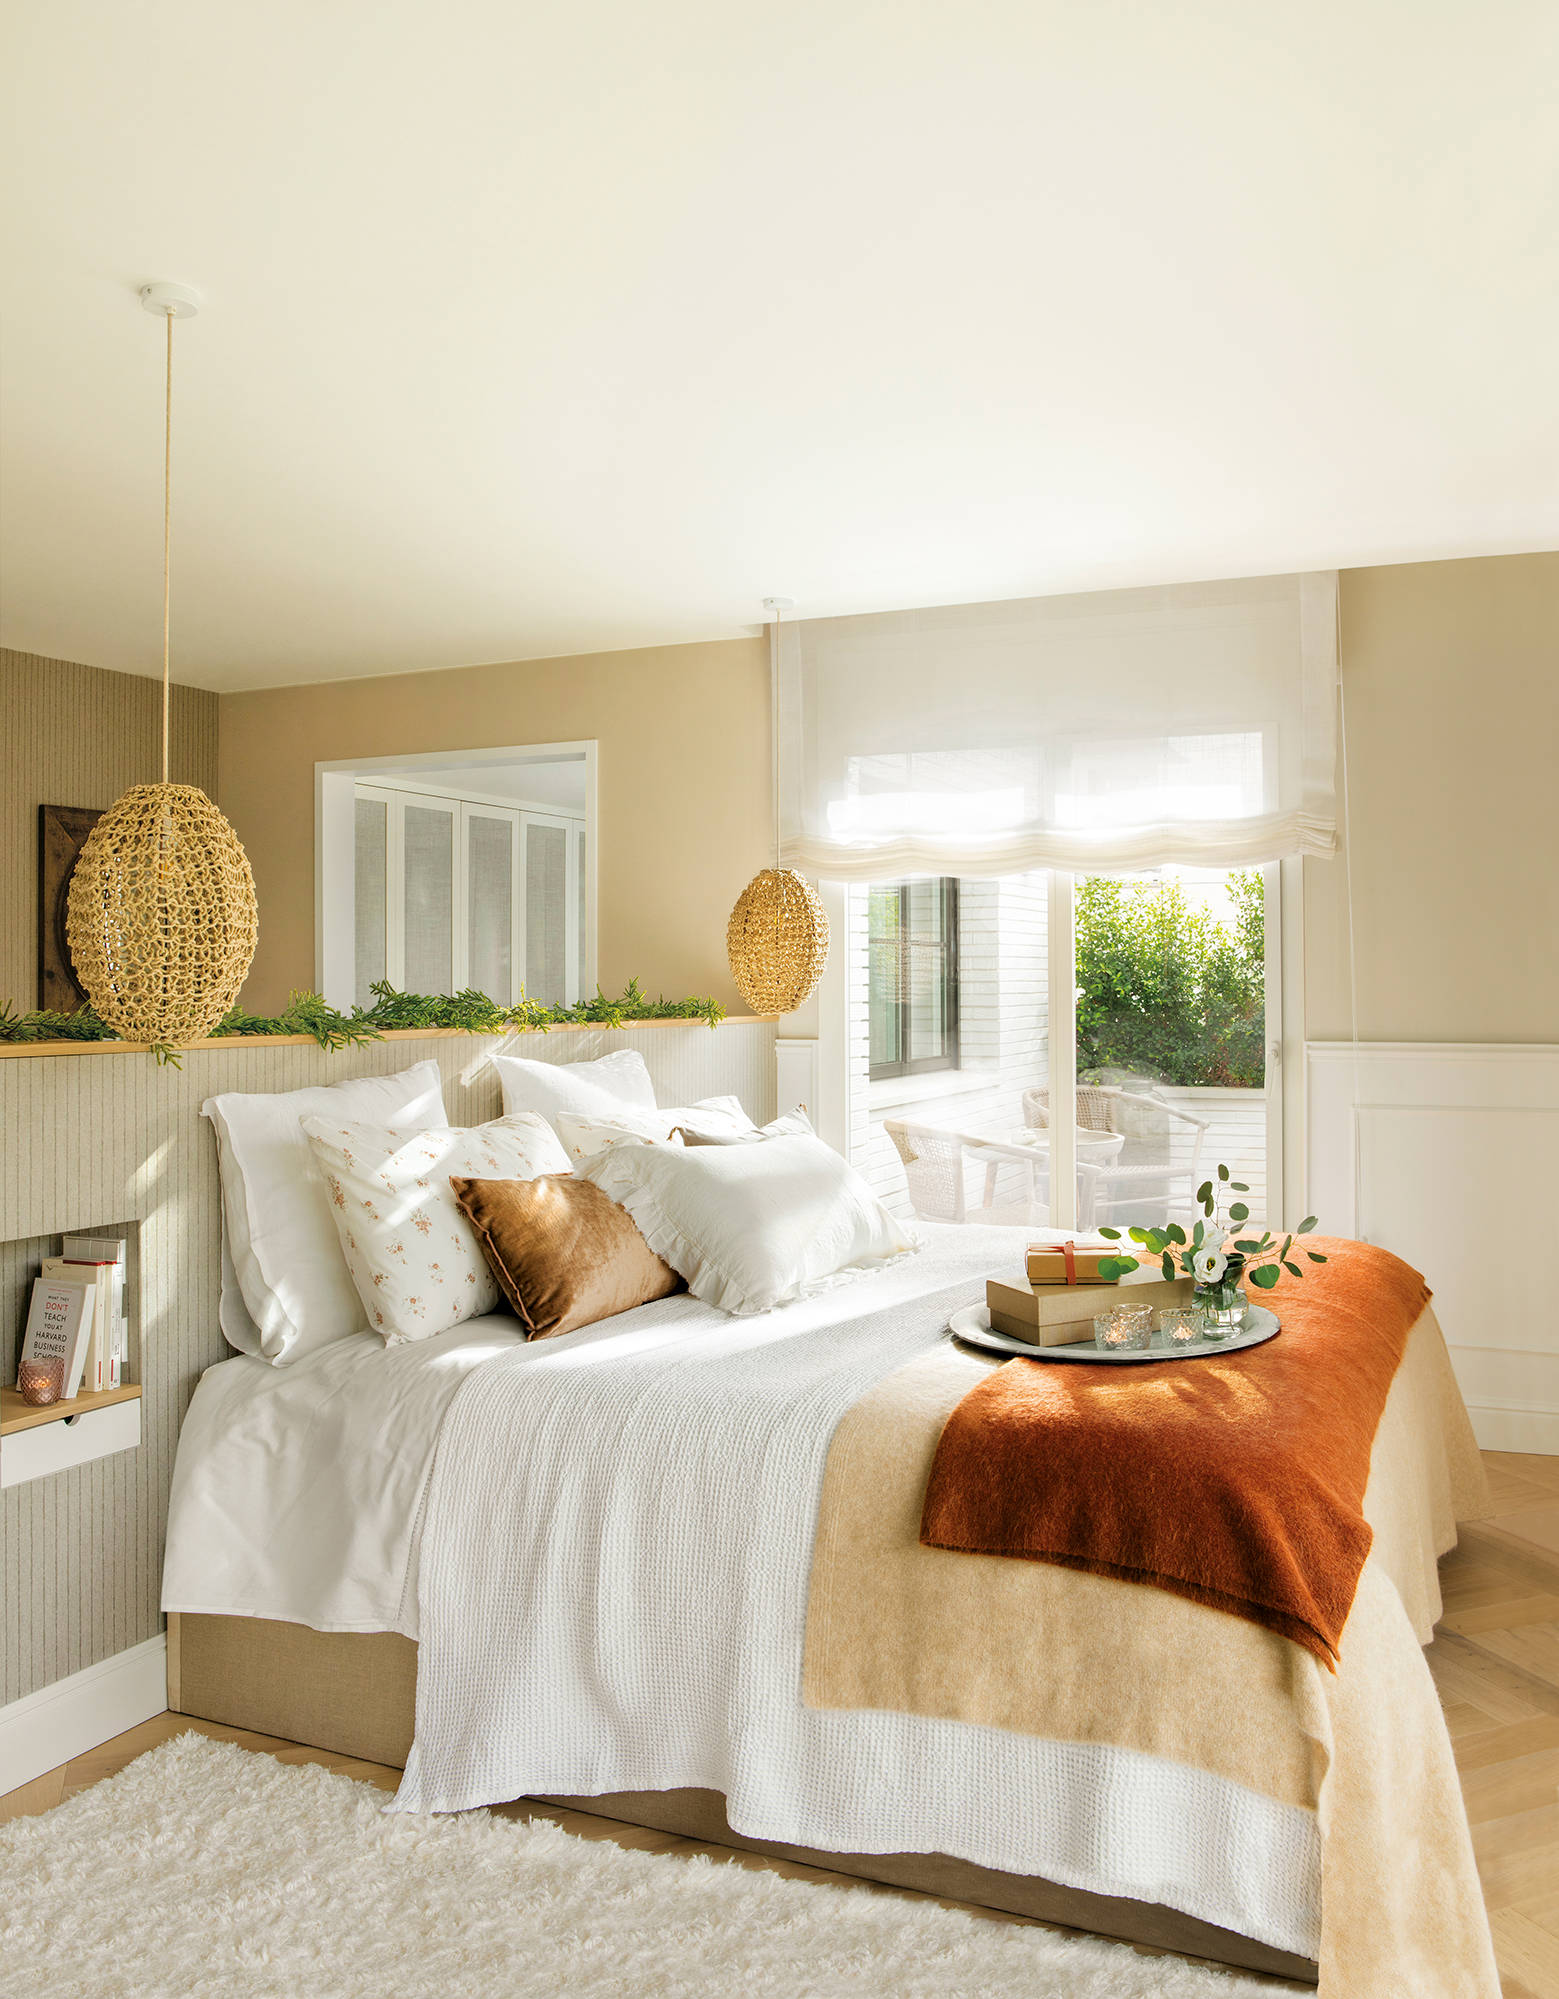 Dormitorio con cabecero empapelado, mesillas integradas y ropa de cama en blanco y beige.